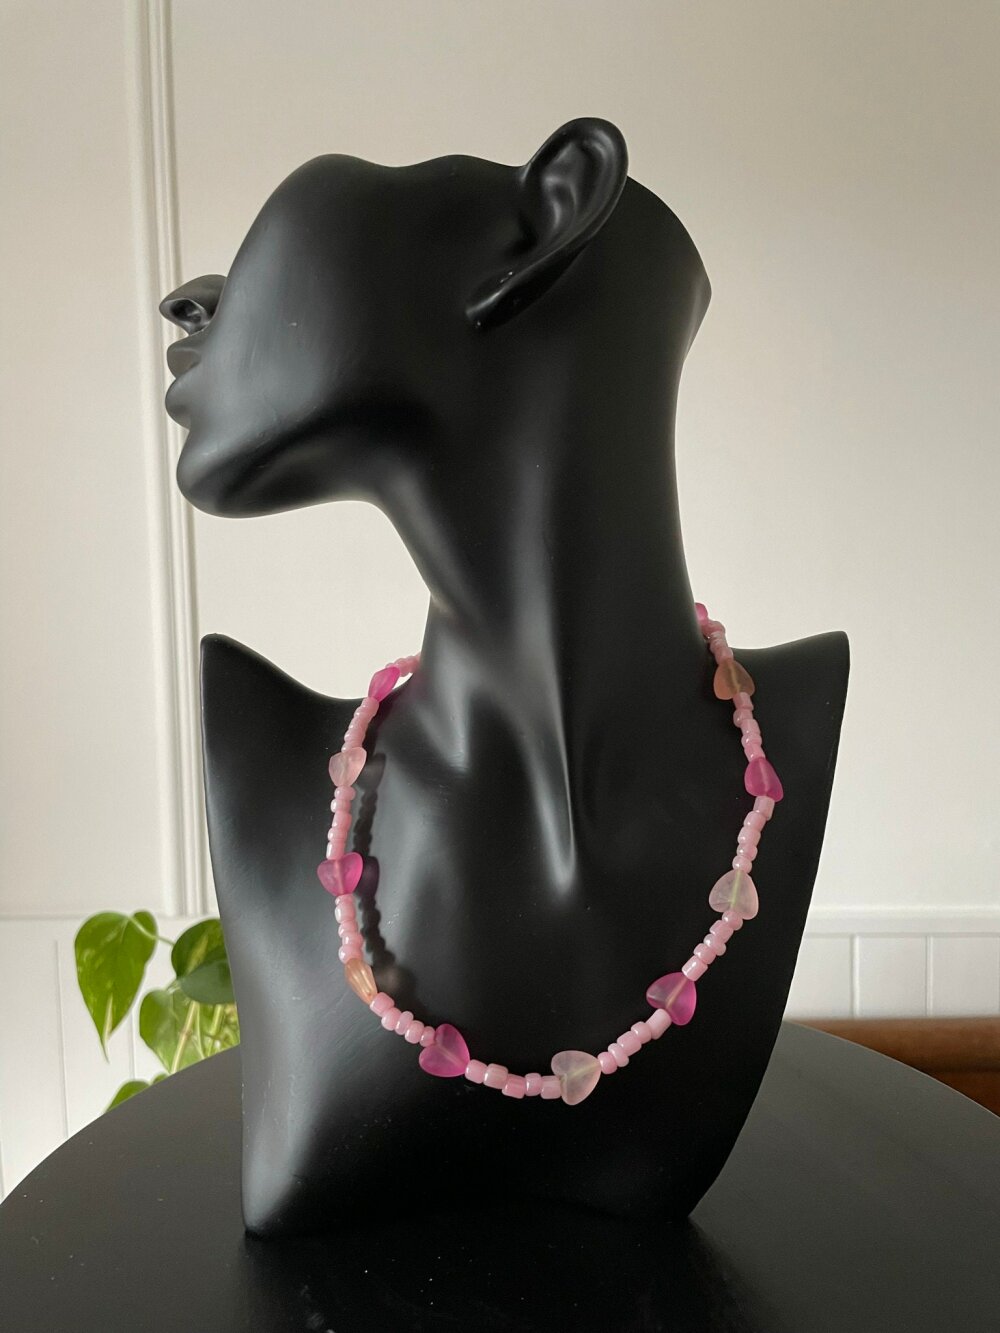 Collier perles fantaisies rose cœurs fil élastique coloré résistant - Un  grand marché